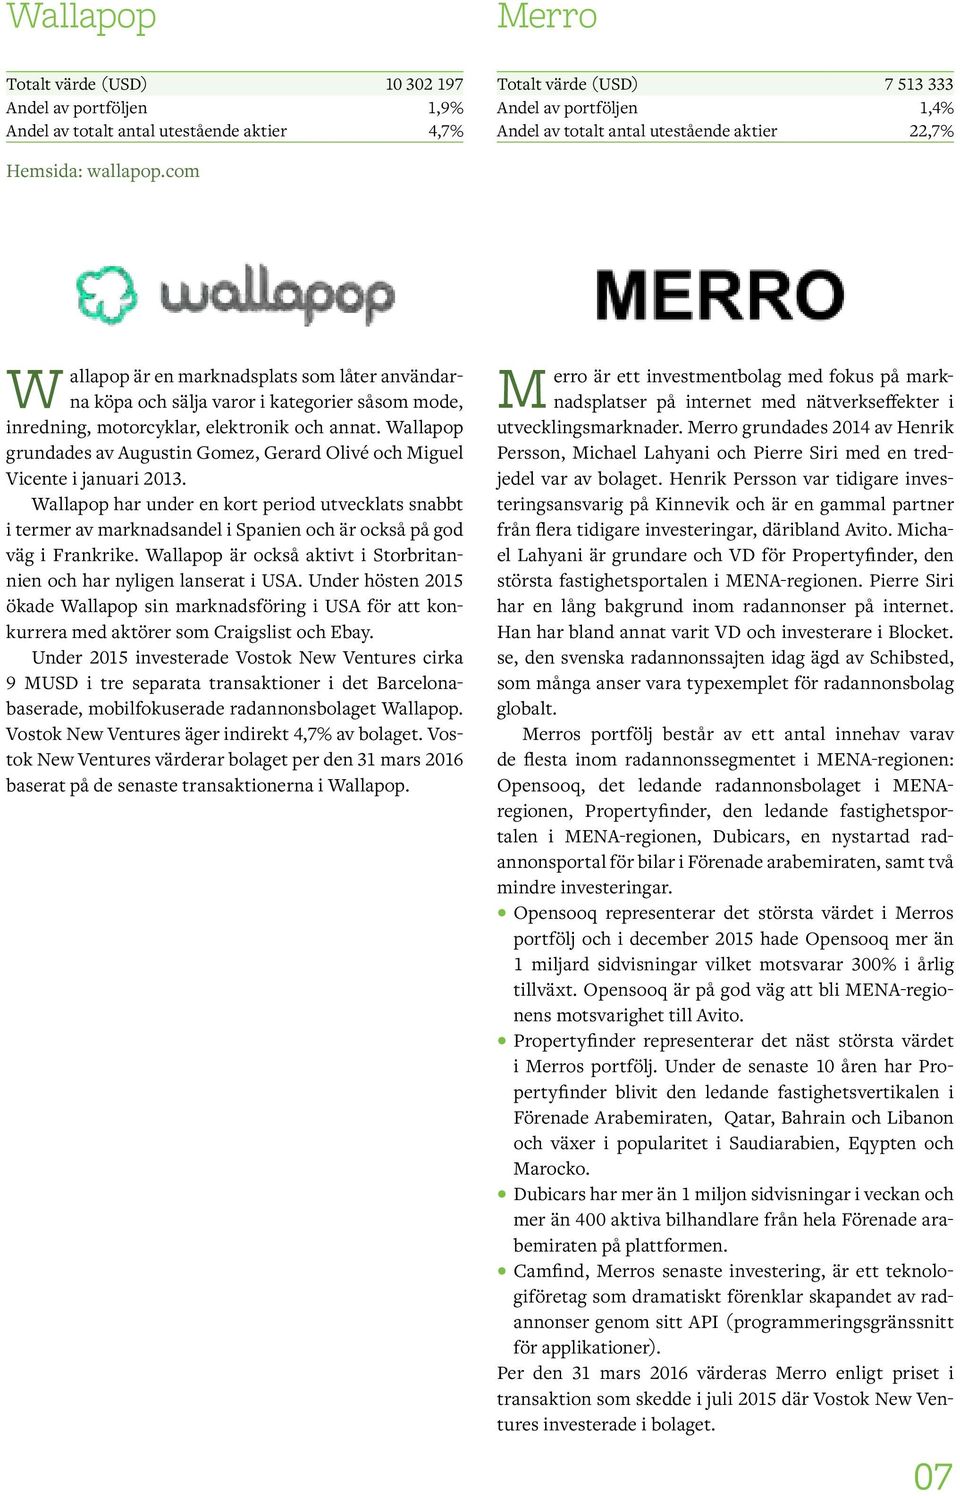 Wallapop grundades av Augustin Gomez, Gerard Olivé och Miguel Vicente i januari 2013.